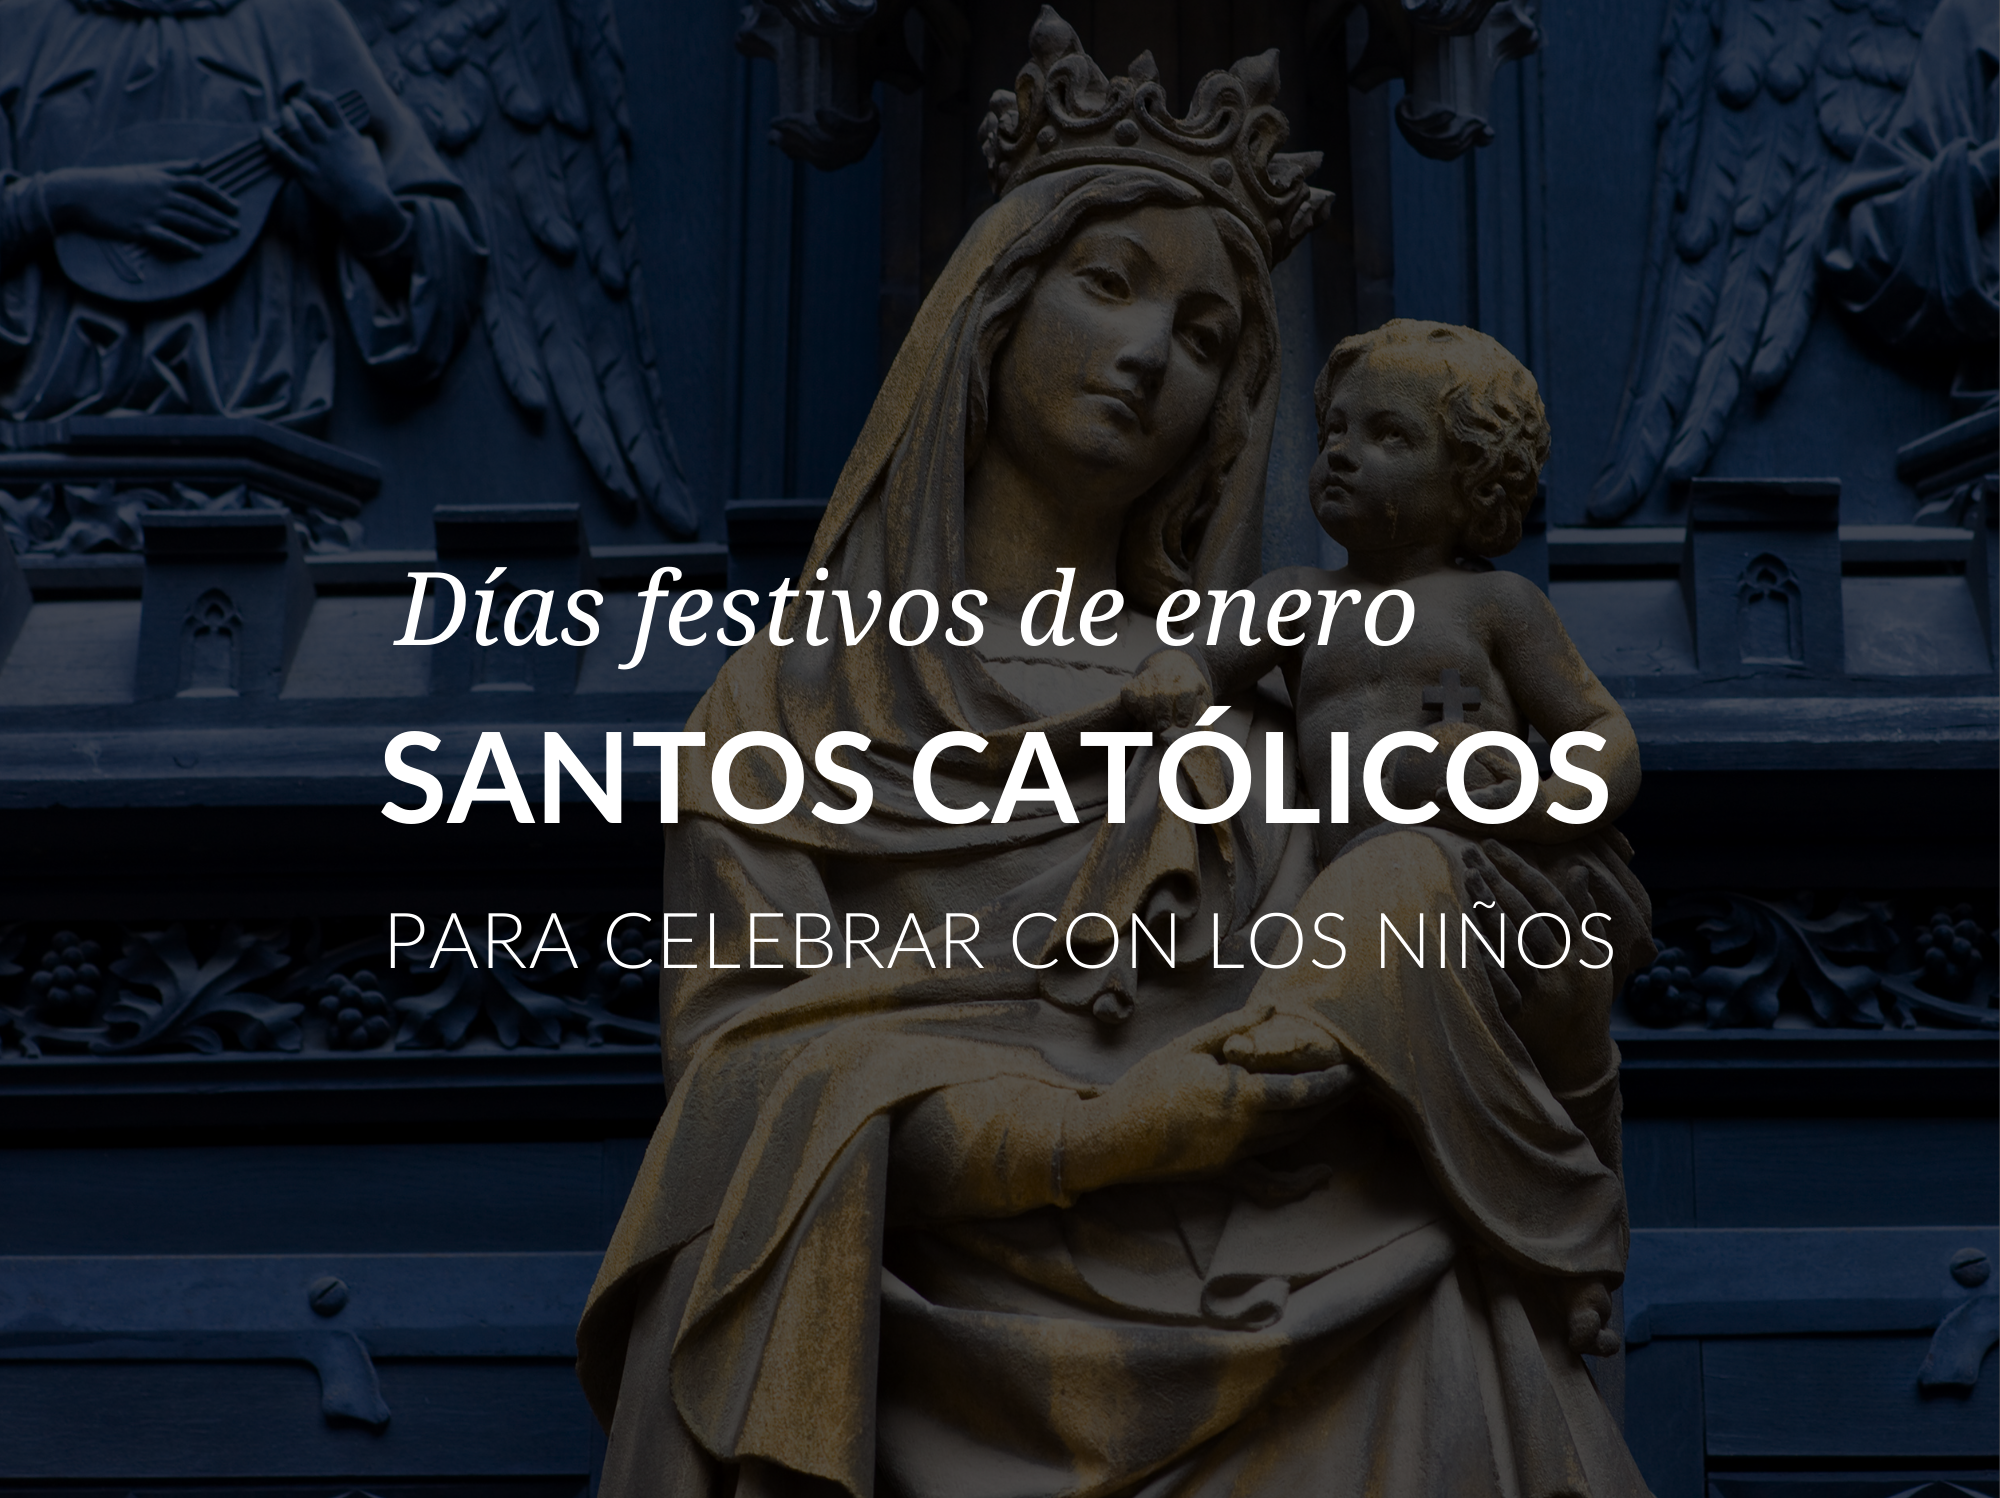 Dias festivos de enero: santos catolicos para celebrar con los ninos